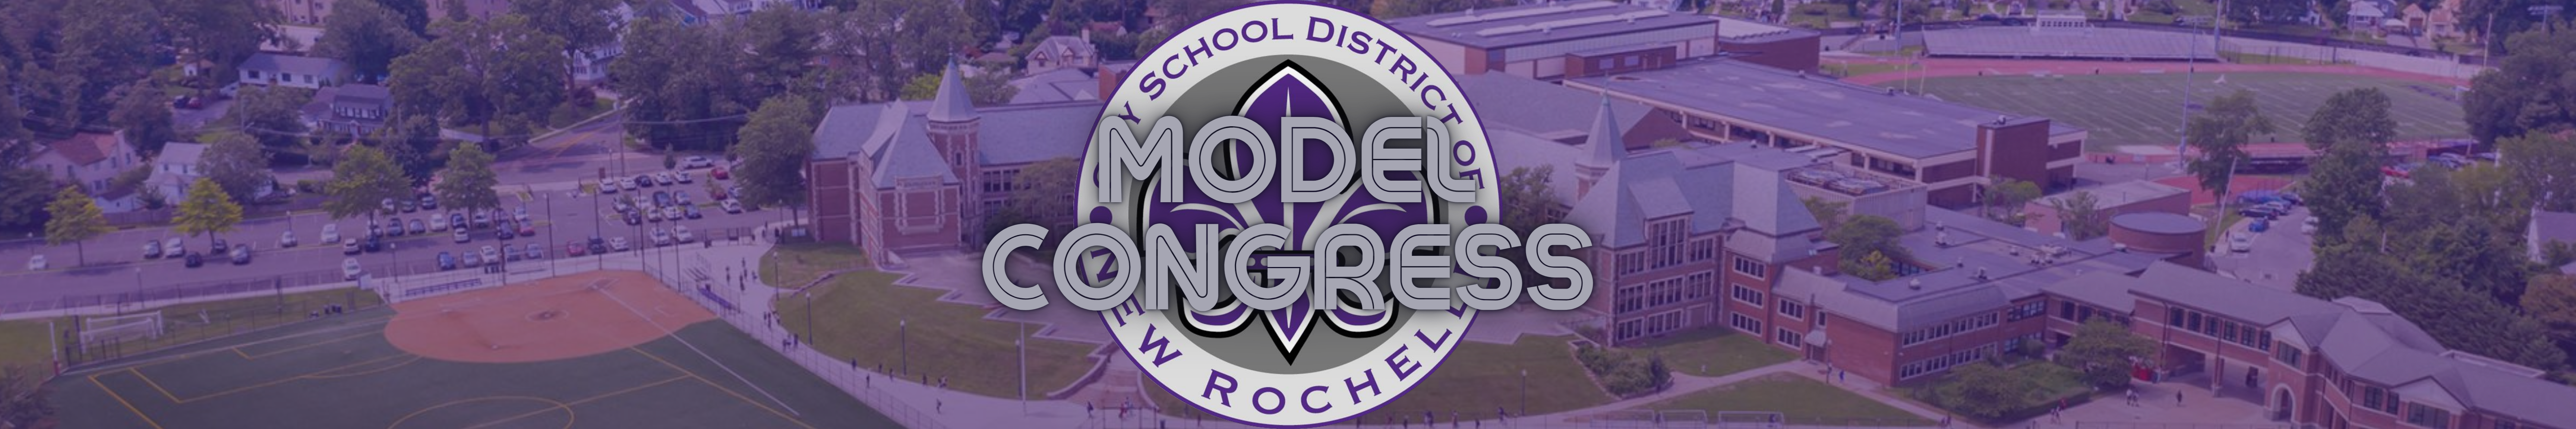 Model Congress banner